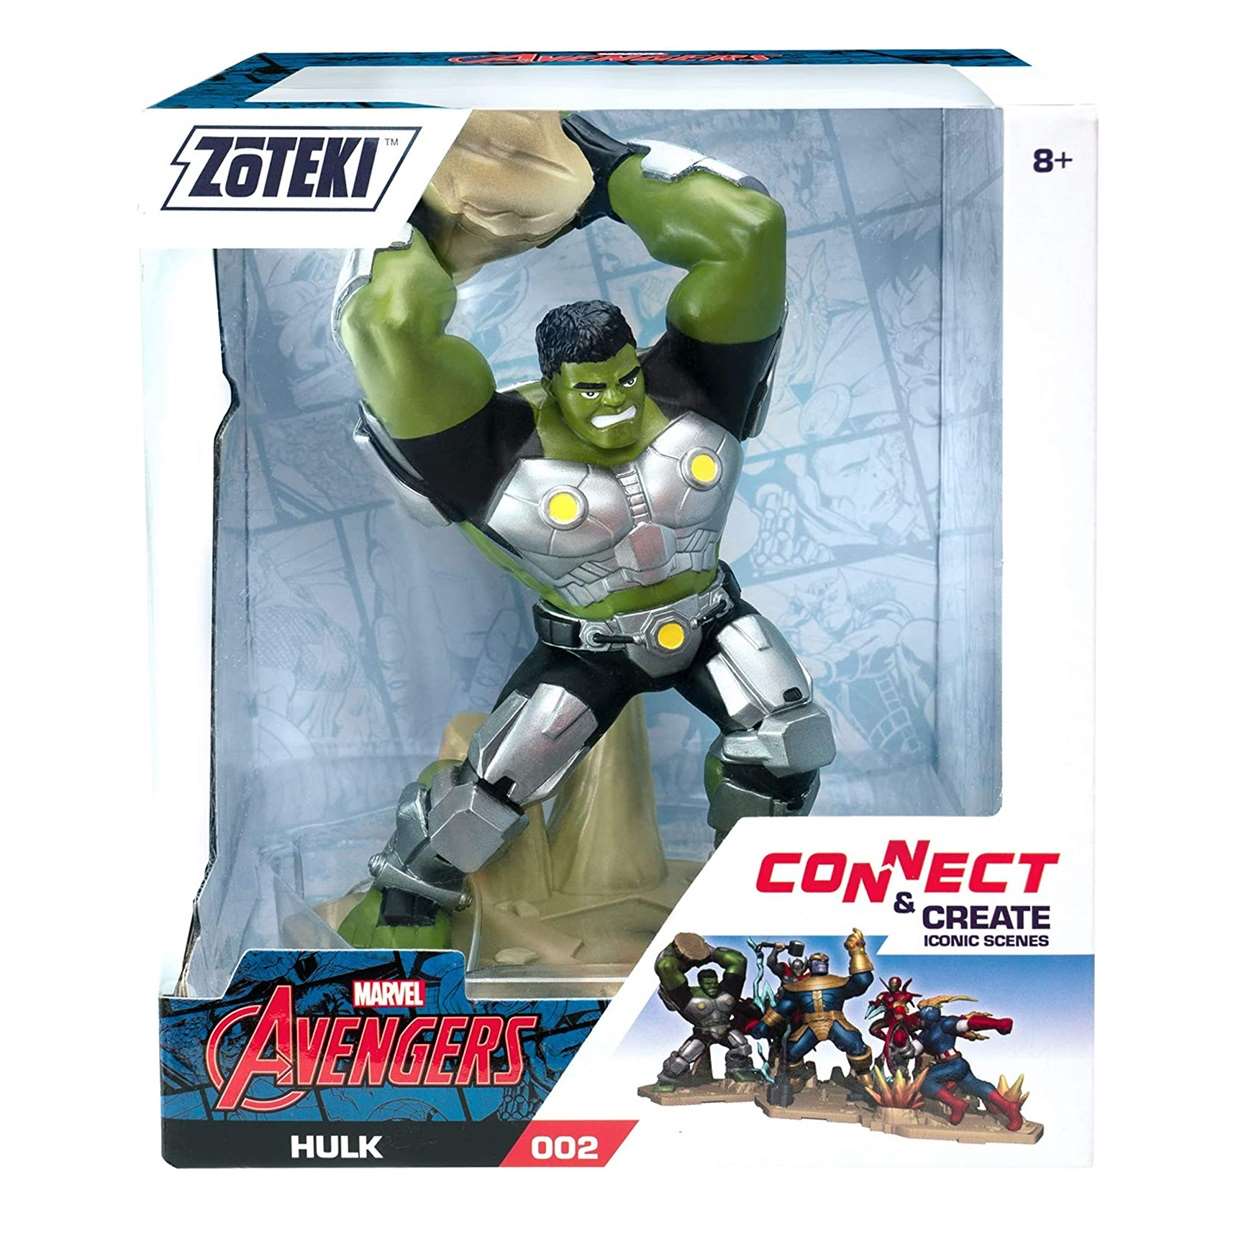 Hulk #002 Figura Marvel Avengers Zoteki 4 Pulgadas